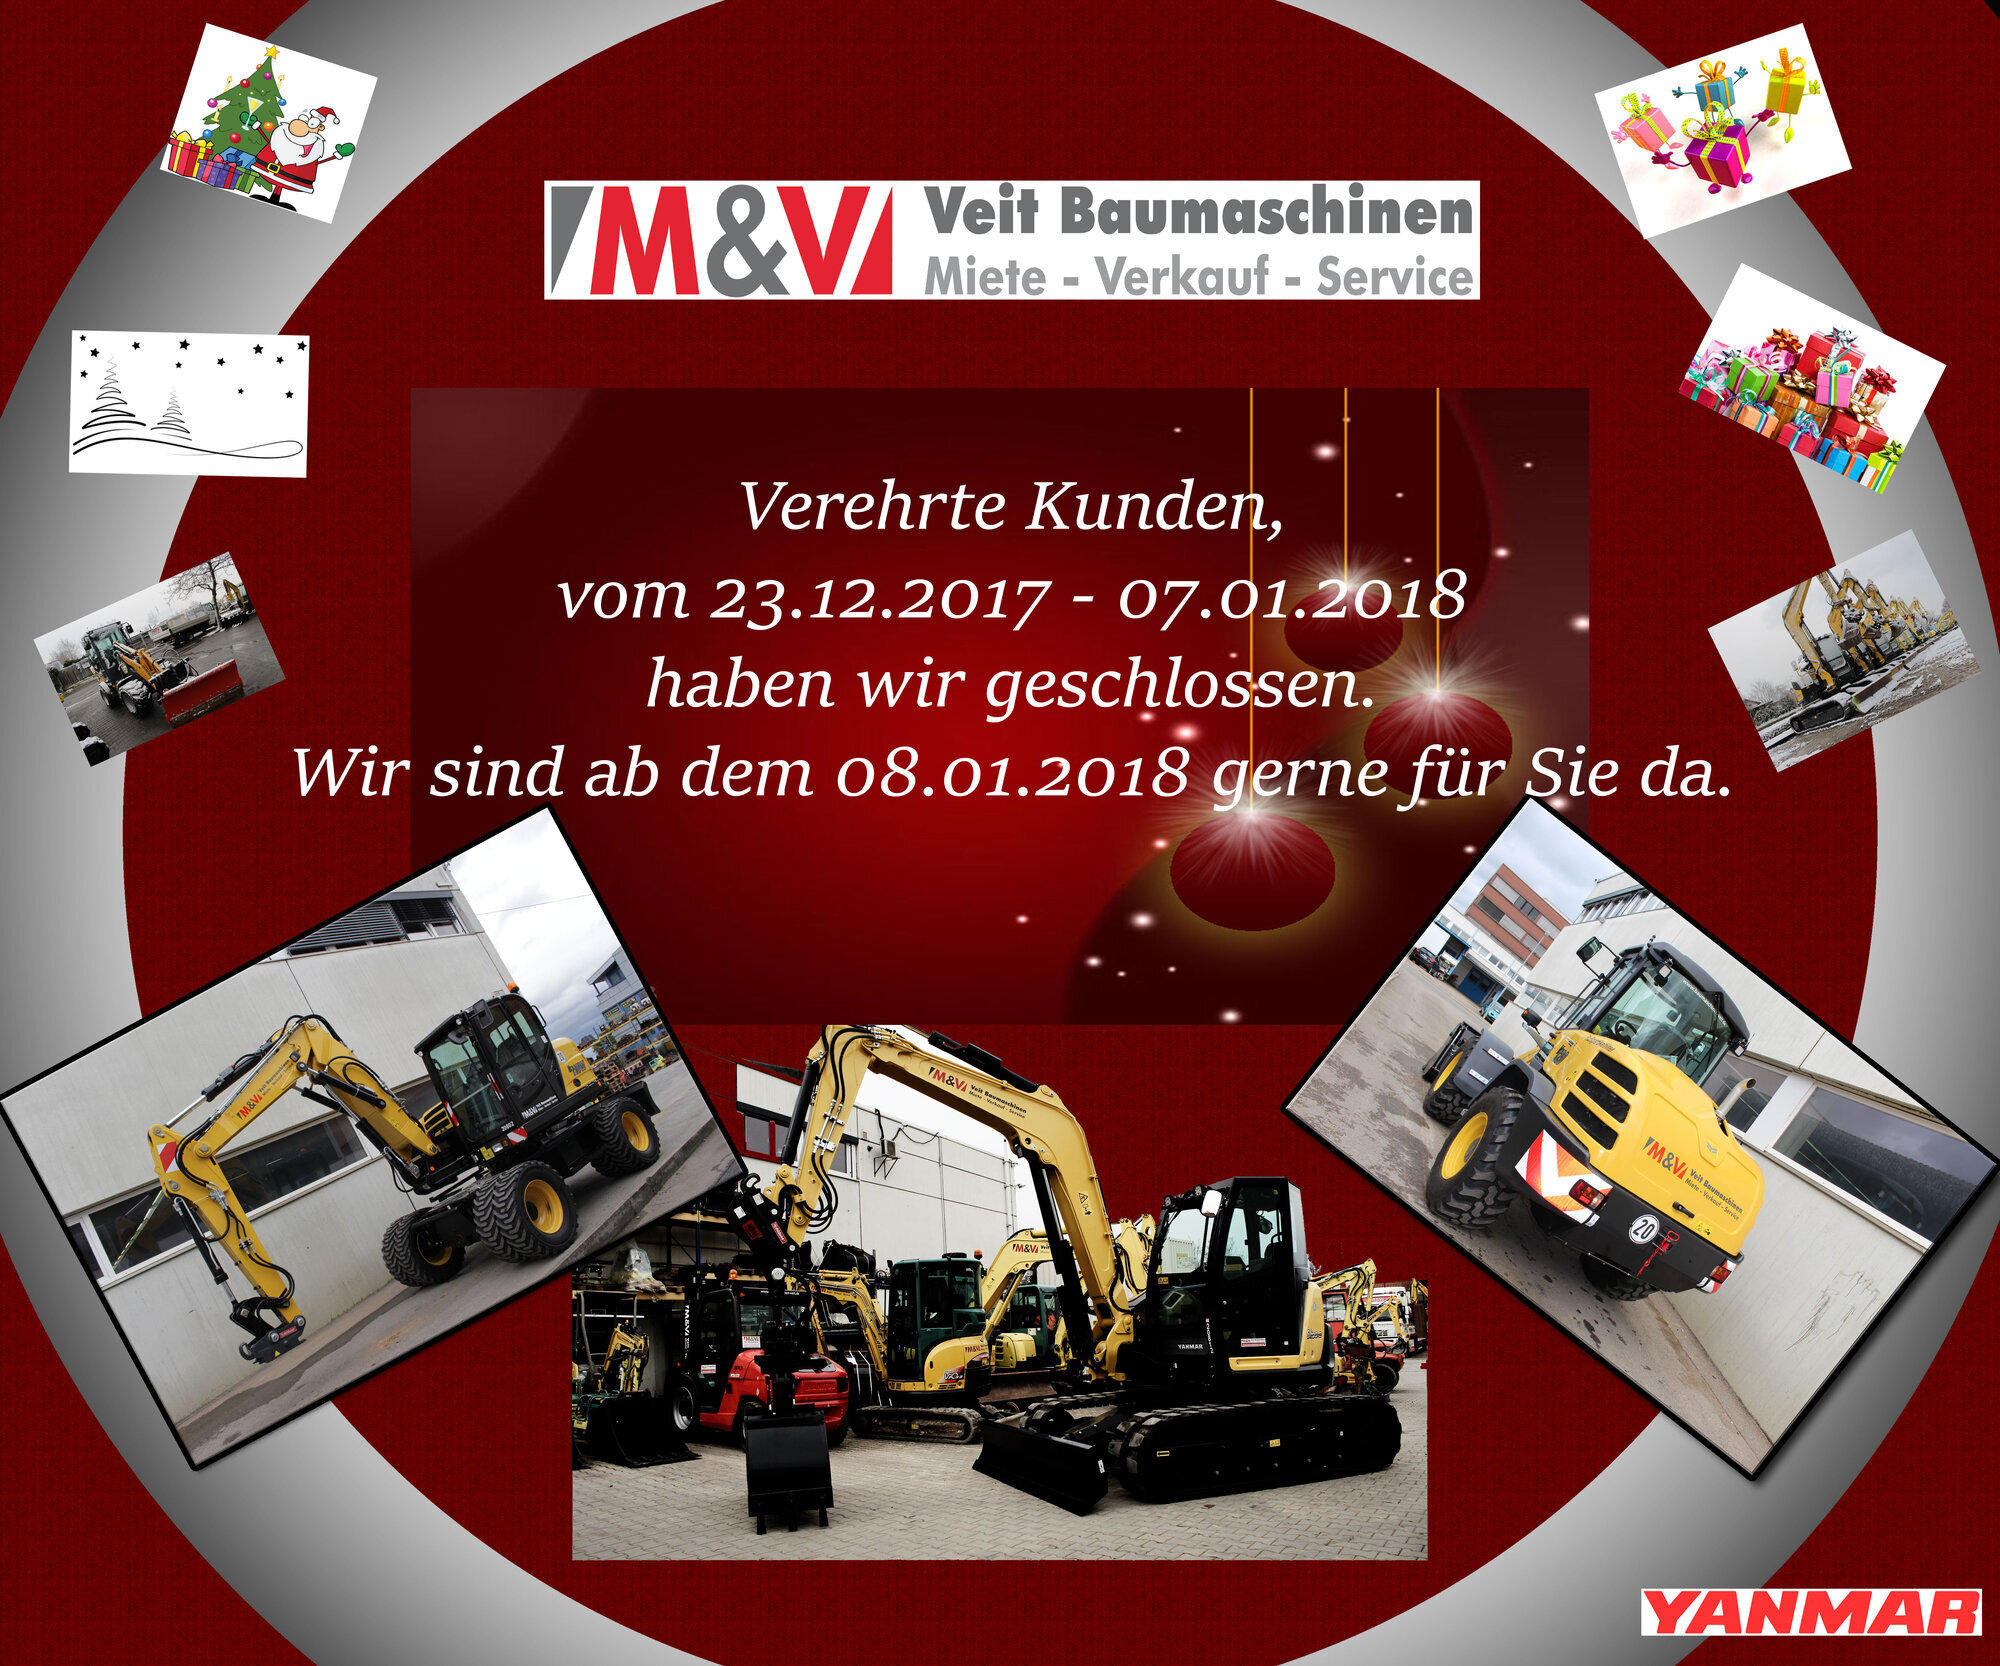 Bilder M&V Veit Baumaschinen GbR